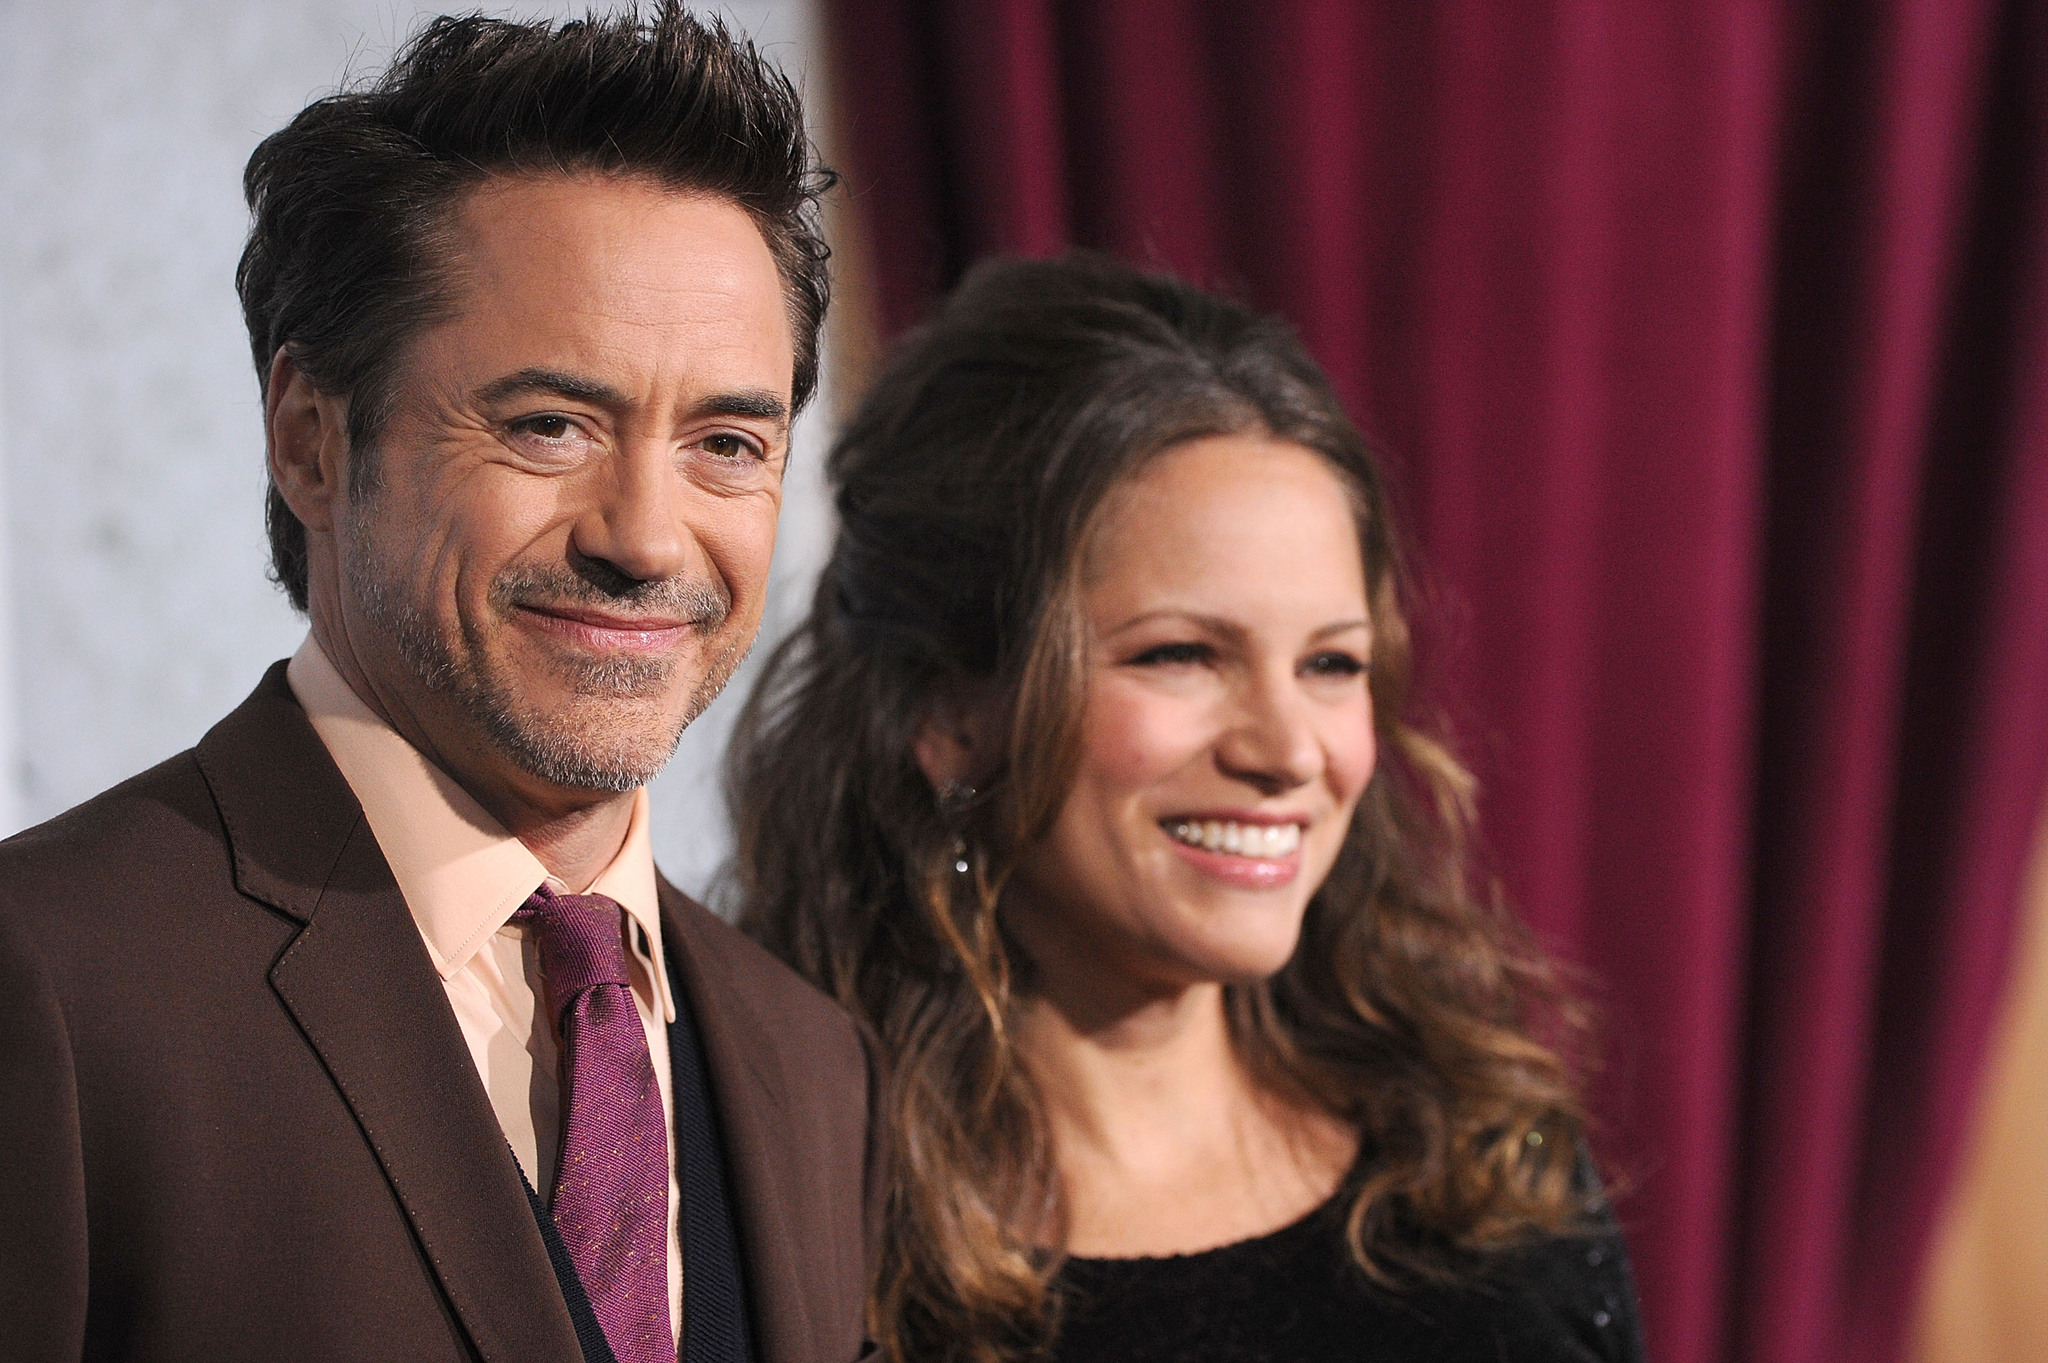 Robert Downey Jr. and Susan Downey at event of Serlokas Holmsas: Seseliu zaidimas (2011)